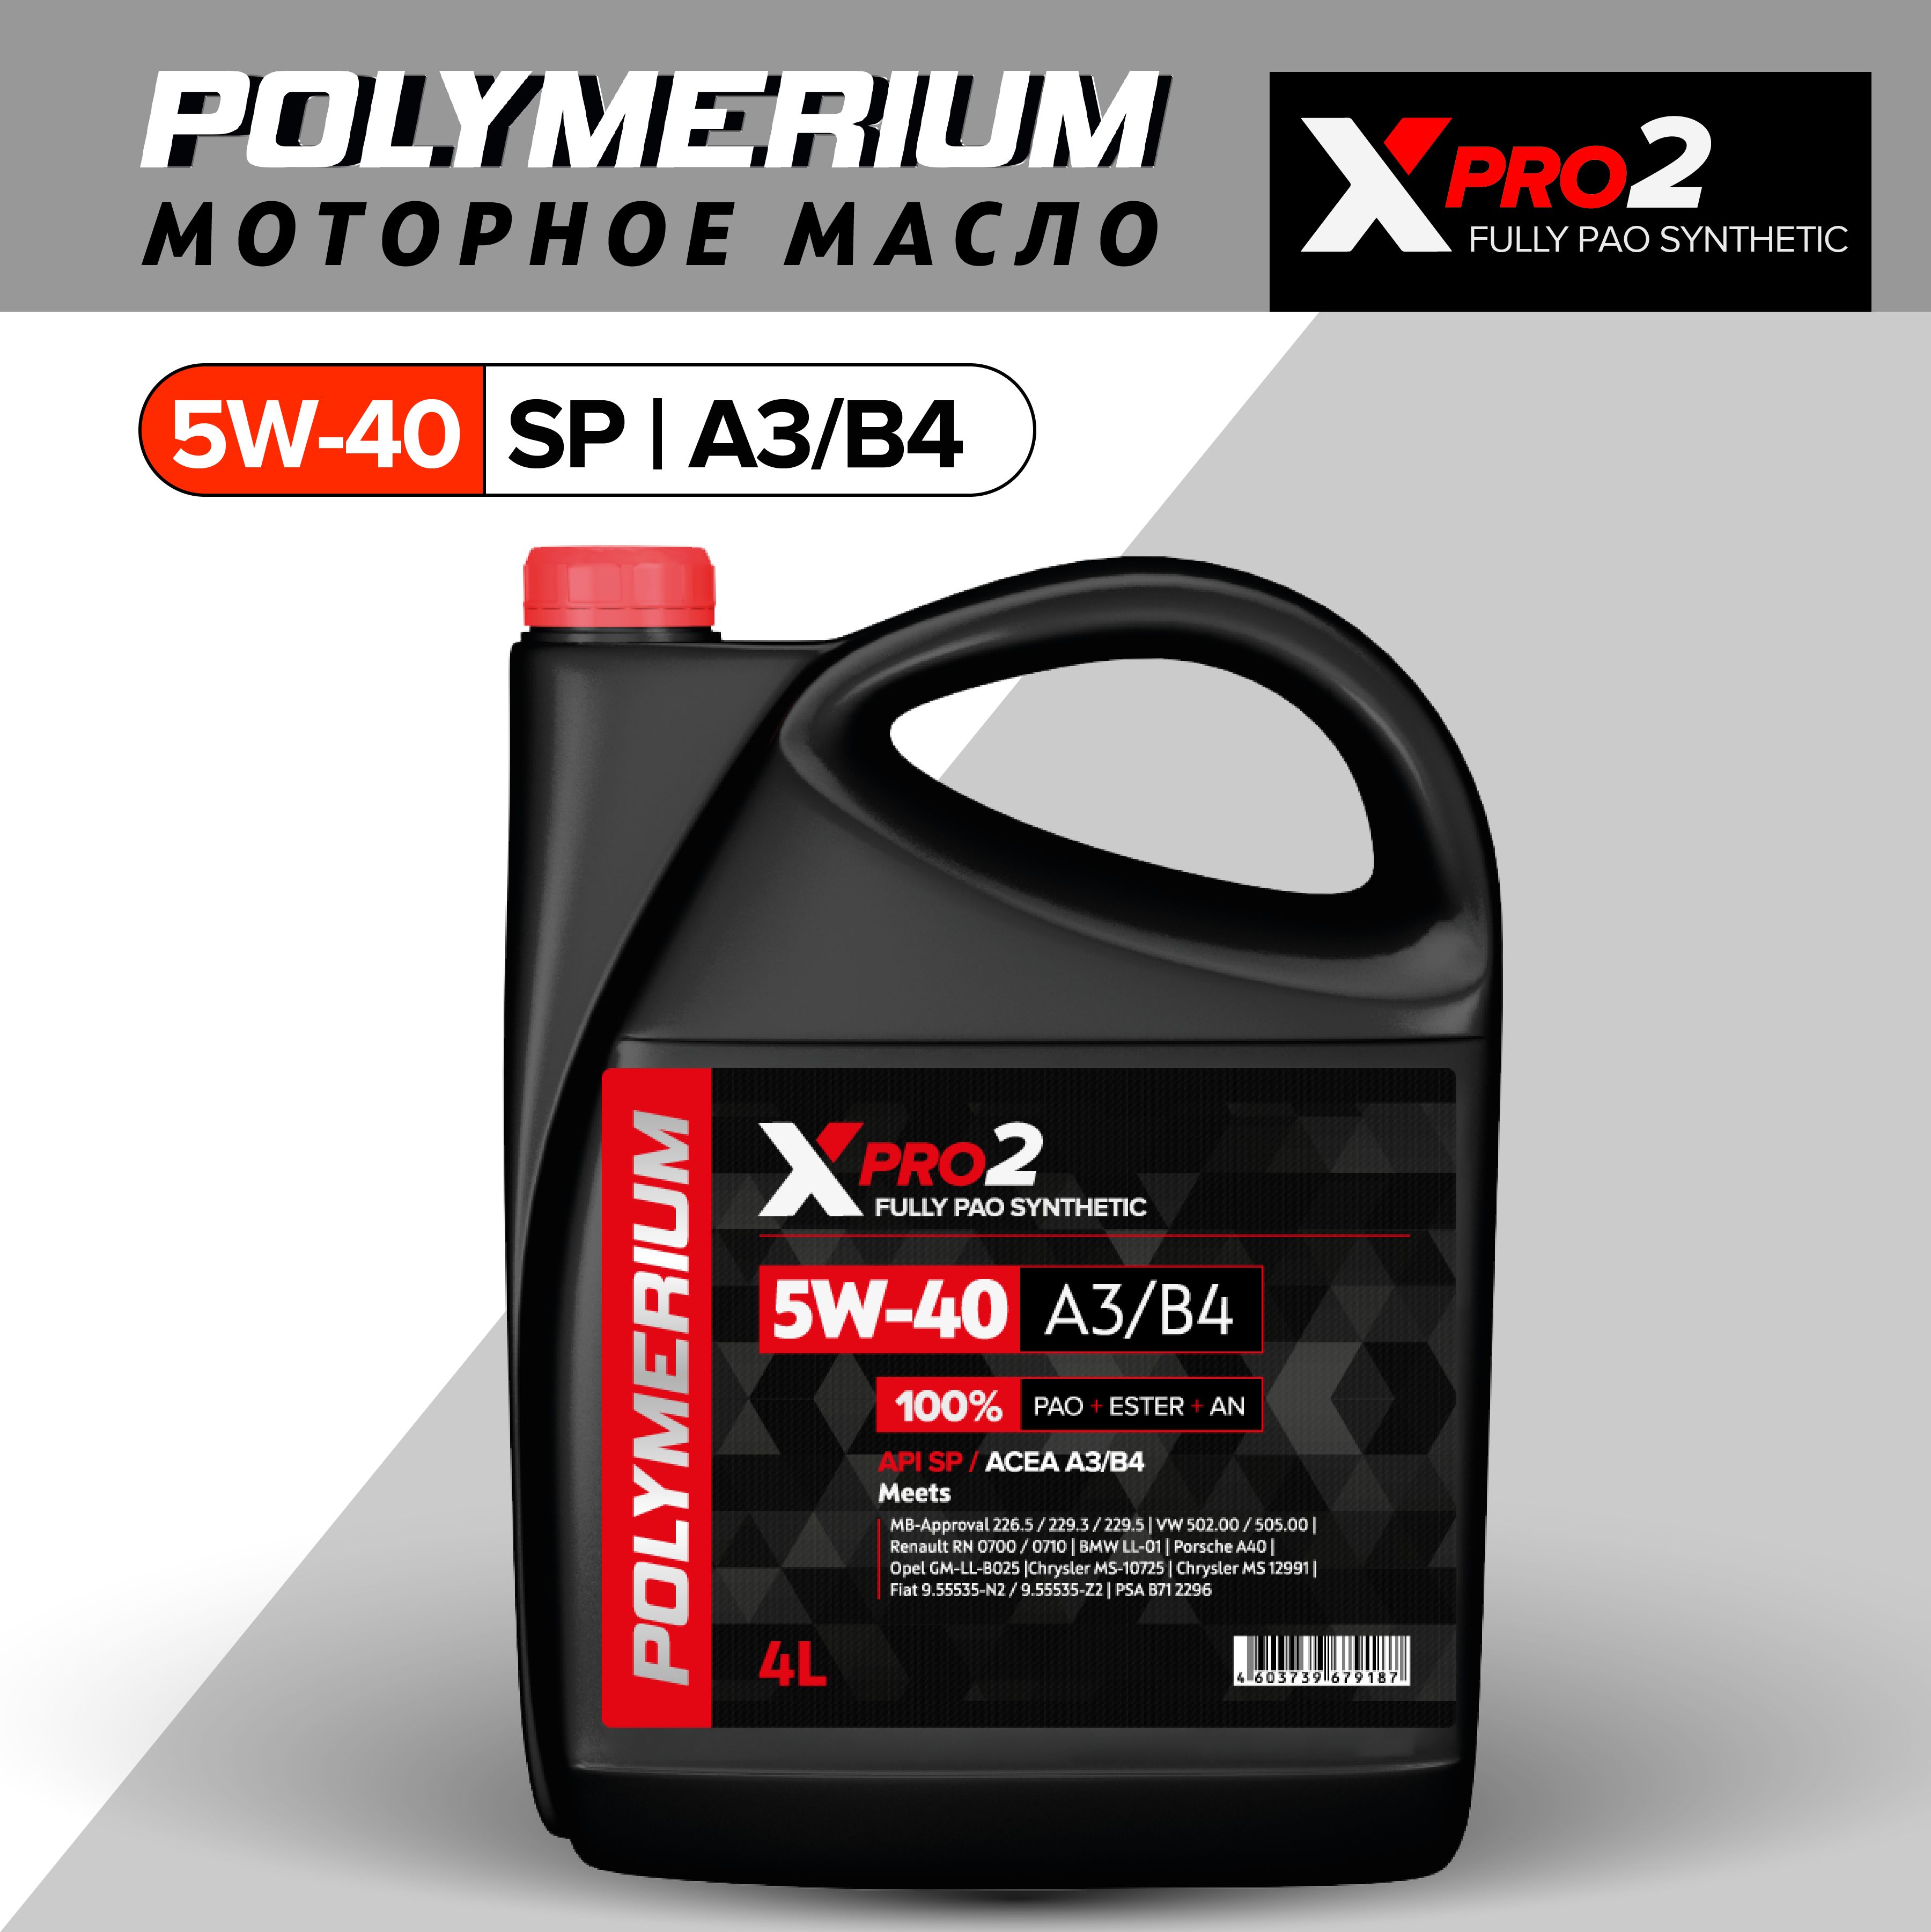 Полимериум 5w40 отзывы. Polymerium xpro2 5w-40. Моторное масло Polymerium. Полимериум 5w40 купить. Масло полимериум 5w40 цена.